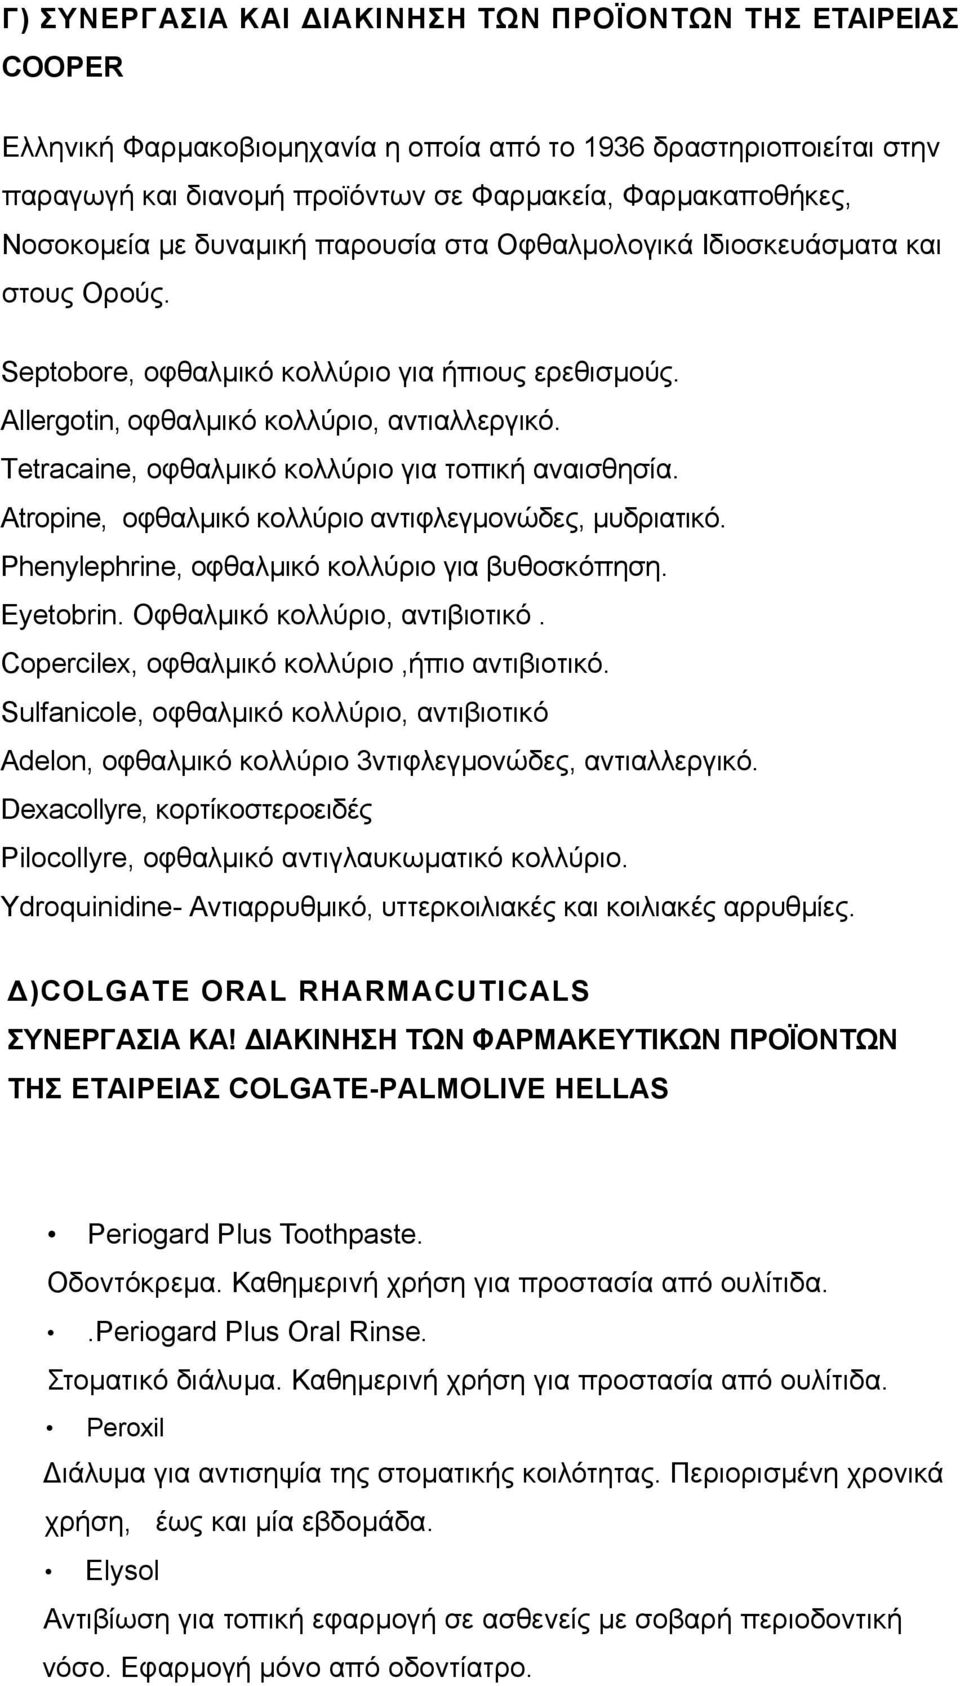 Τetracaine, οφθαλµικό κολλύριο για τοπική αναισθησία. Atropine, οφθαλµικό κολλύριο αντιφλεγµονώδες, µυδριατικό. Ρhenylephrine, οφθαλµικό κολλύριο για βυθοσκόπηση. Eyetobrin.